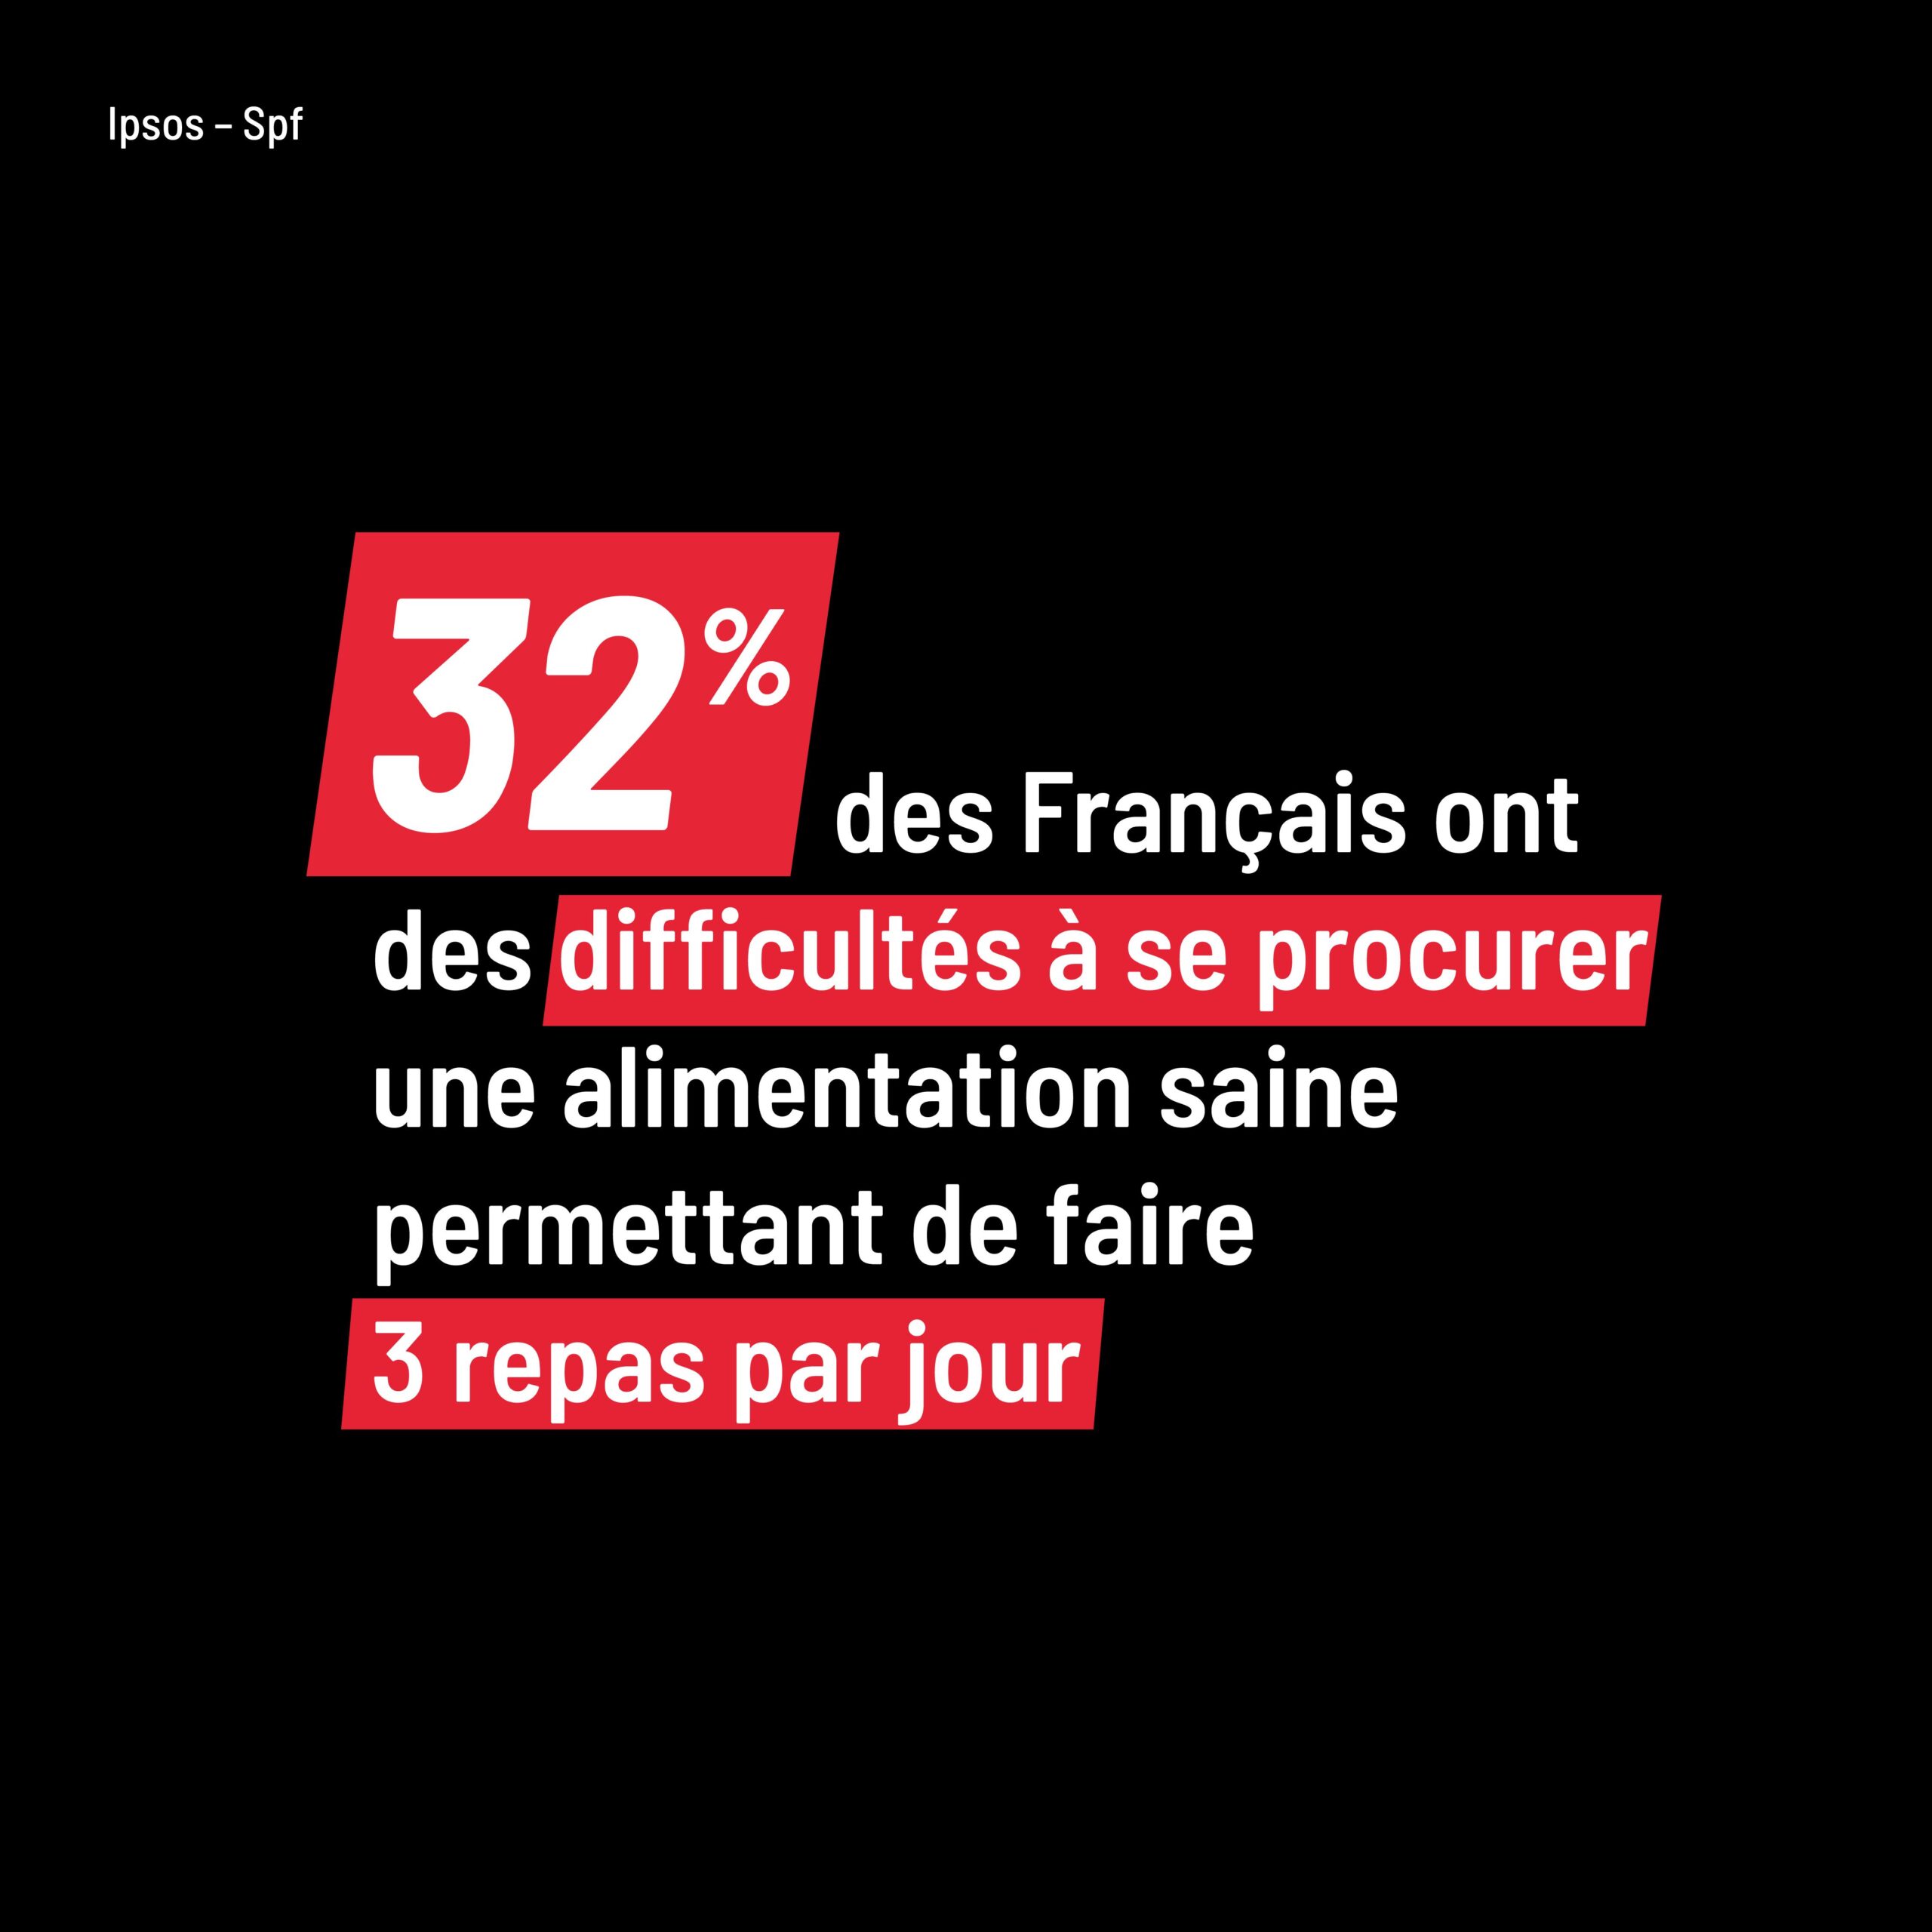 32% des Français ont des difficultés à se procurer une alimentation permettant de faire 3 repas par jour.